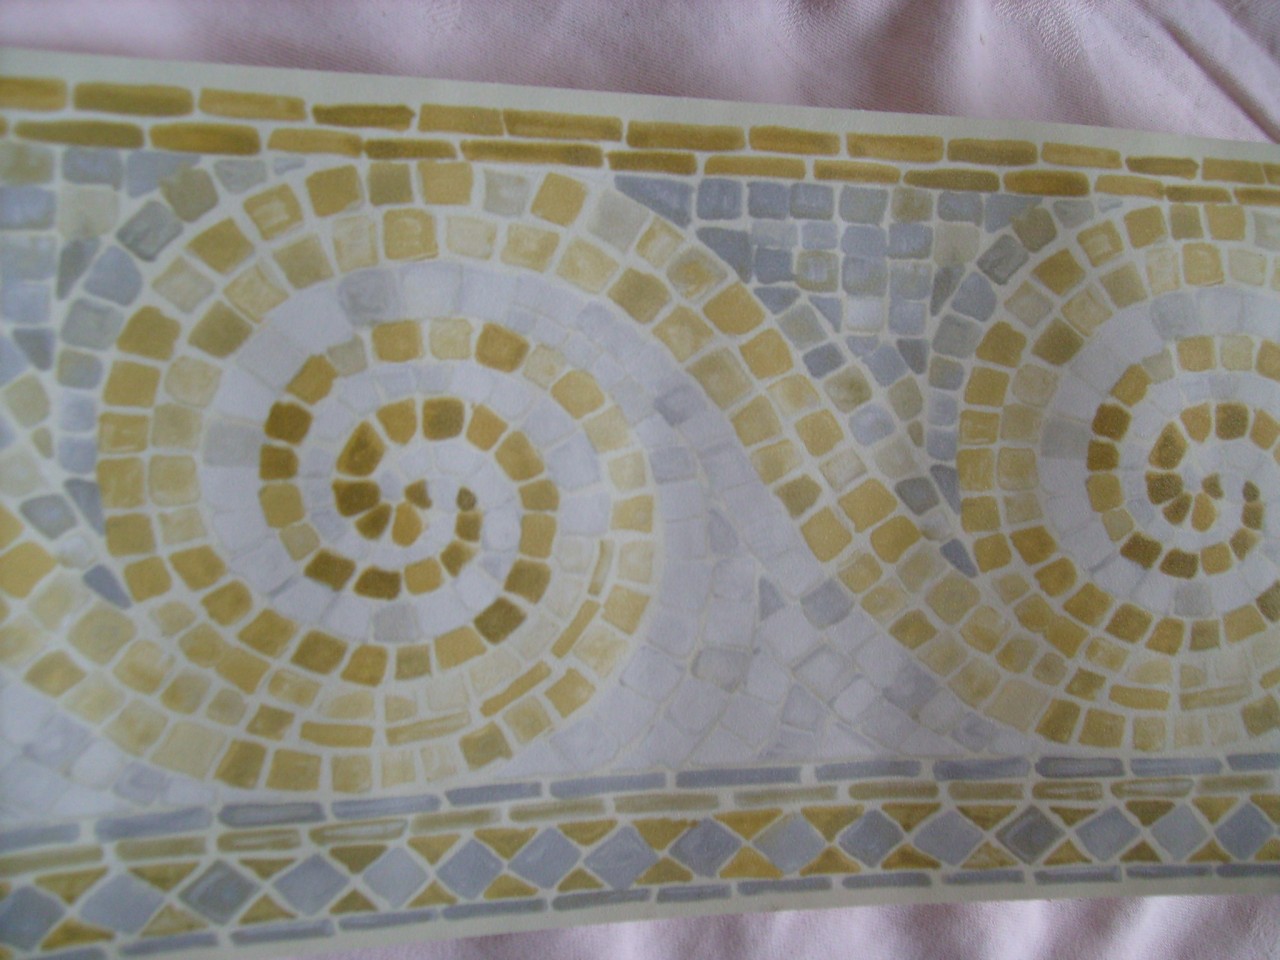 bordo carta da parati grigia,piastrella,pavimento,modello,mosaico,tessile